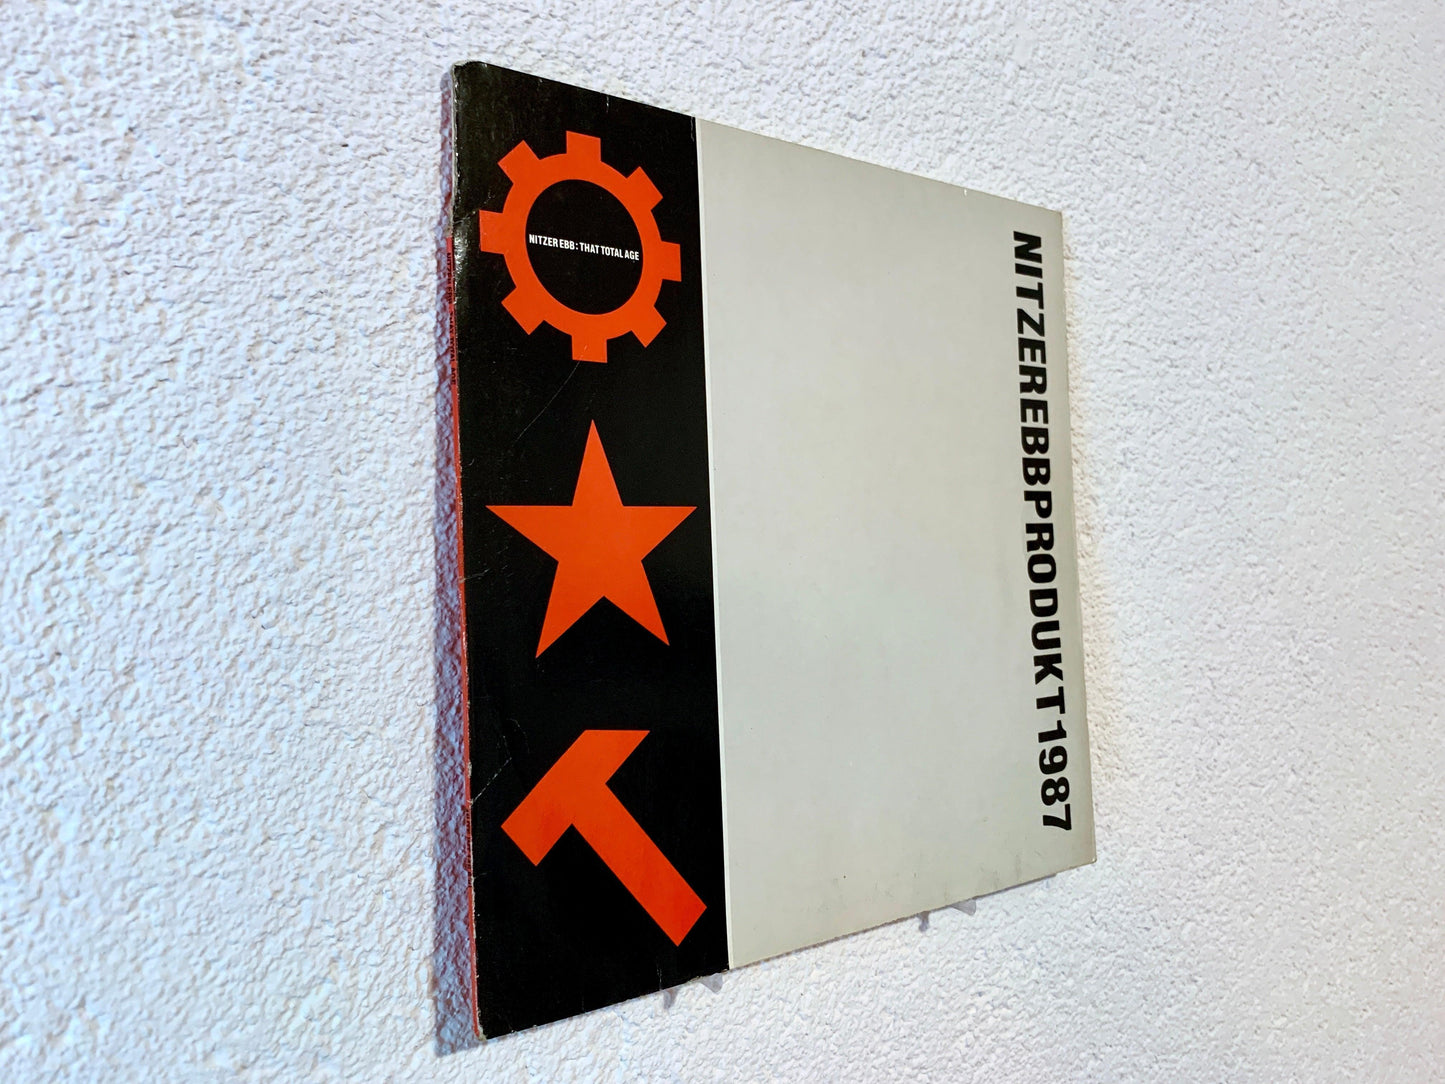 Vinyl Mount ONE - Wandhalter für Schallplatten - spillerphoto